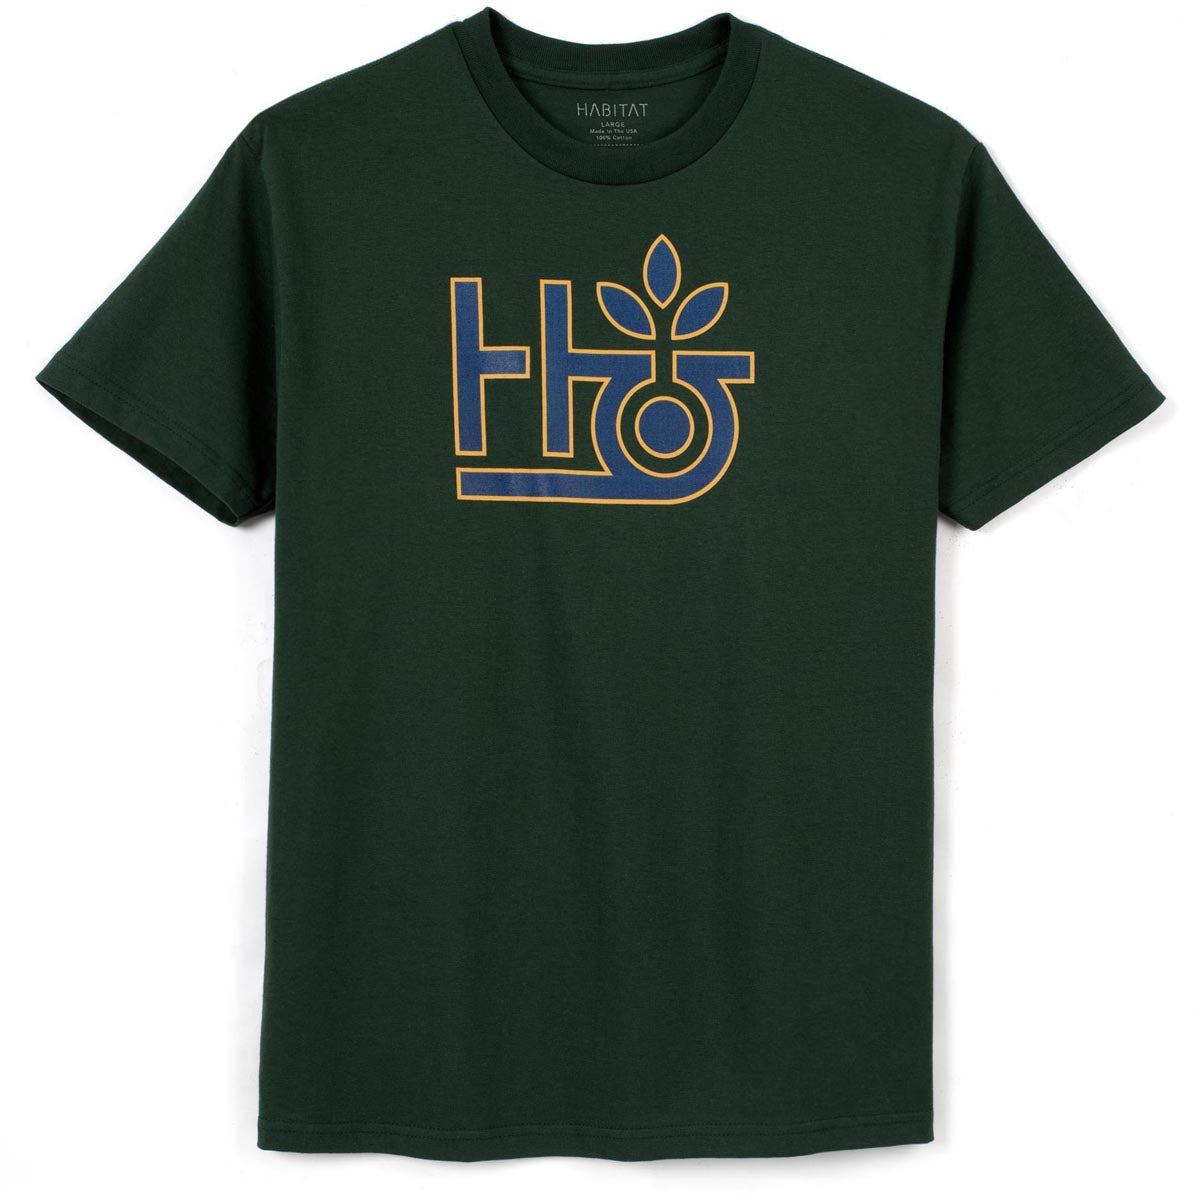 Habitat Pod Logo T-Shirt - Dark Green image 1